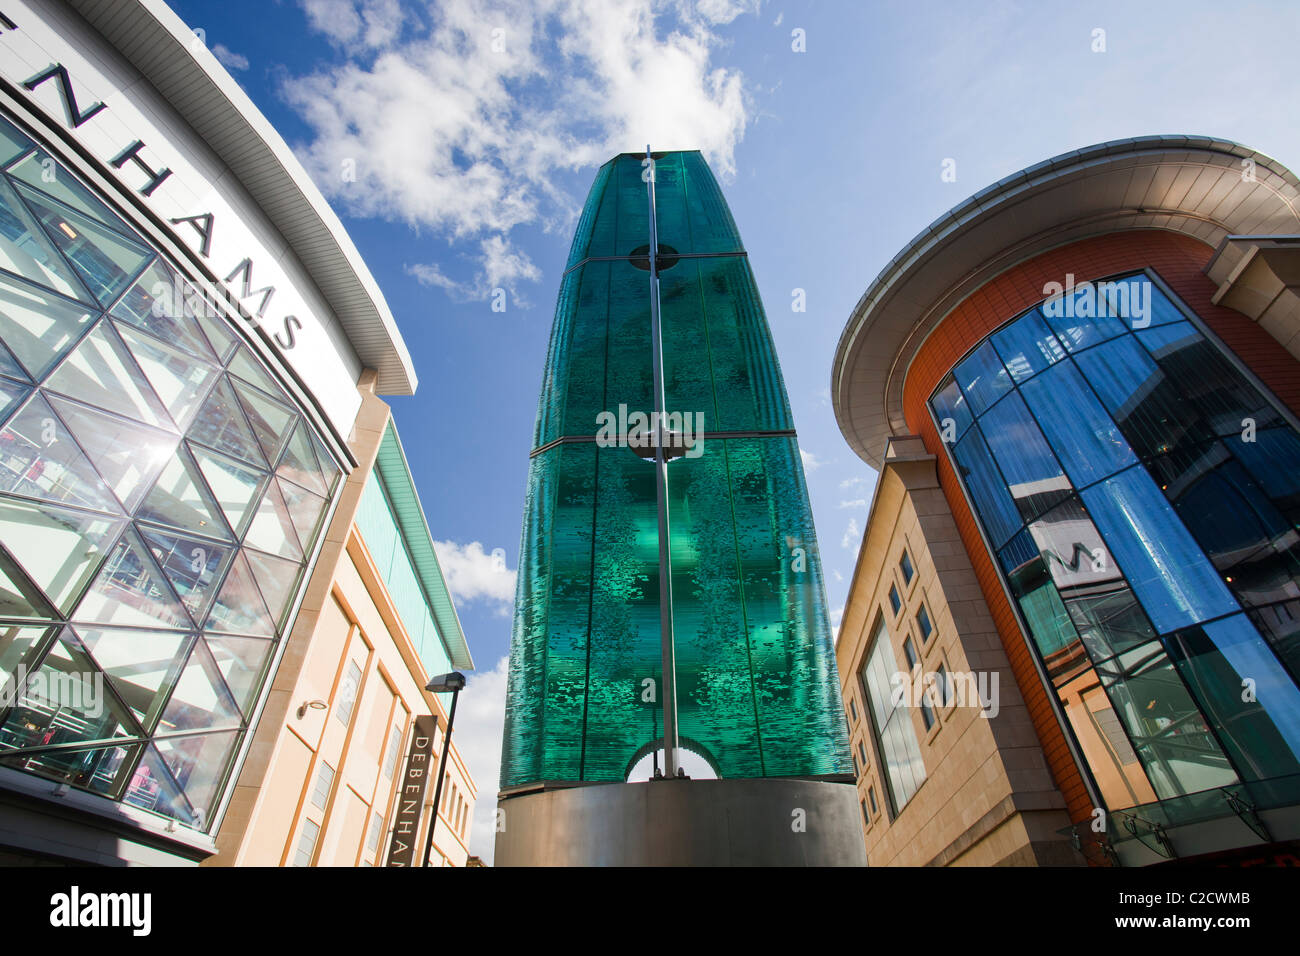 Danny Lane 'ellissi eclissi' sculture in vetro nel centro cittadino di Newcastle, Tyneside, Regno Unito. Foto Stock